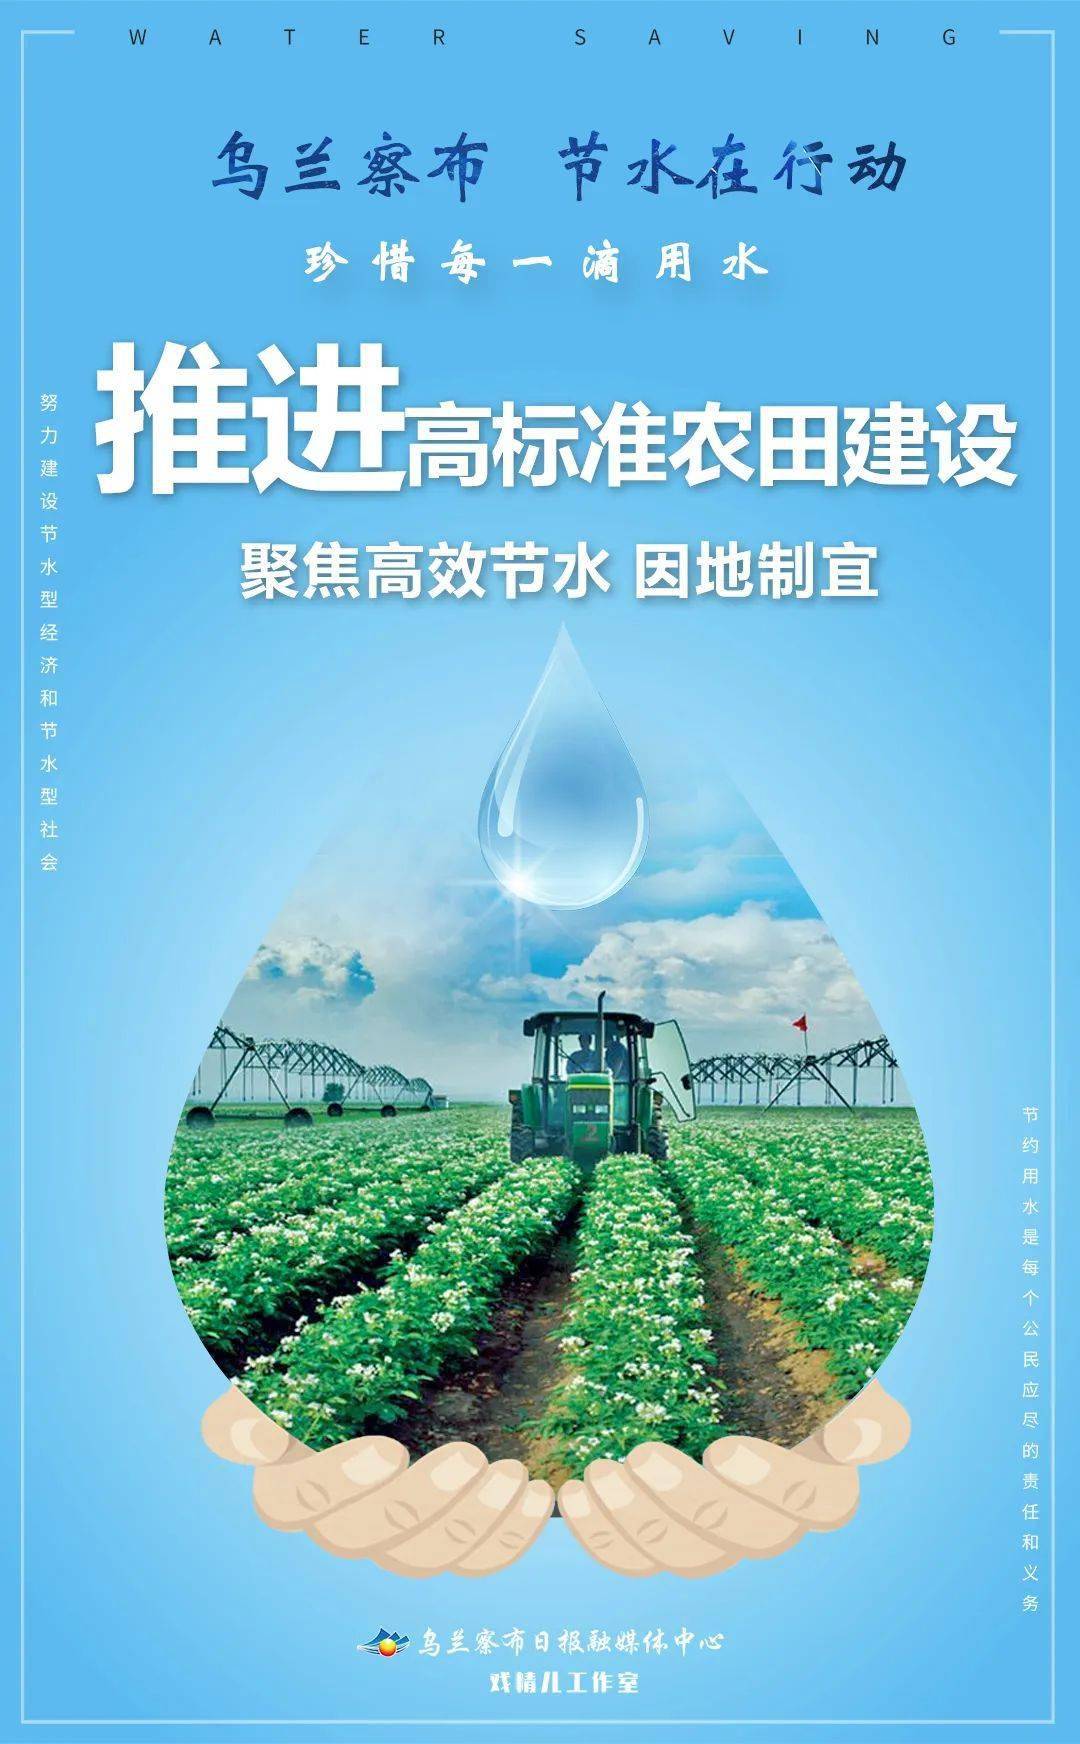 节水灌溉宣传图片